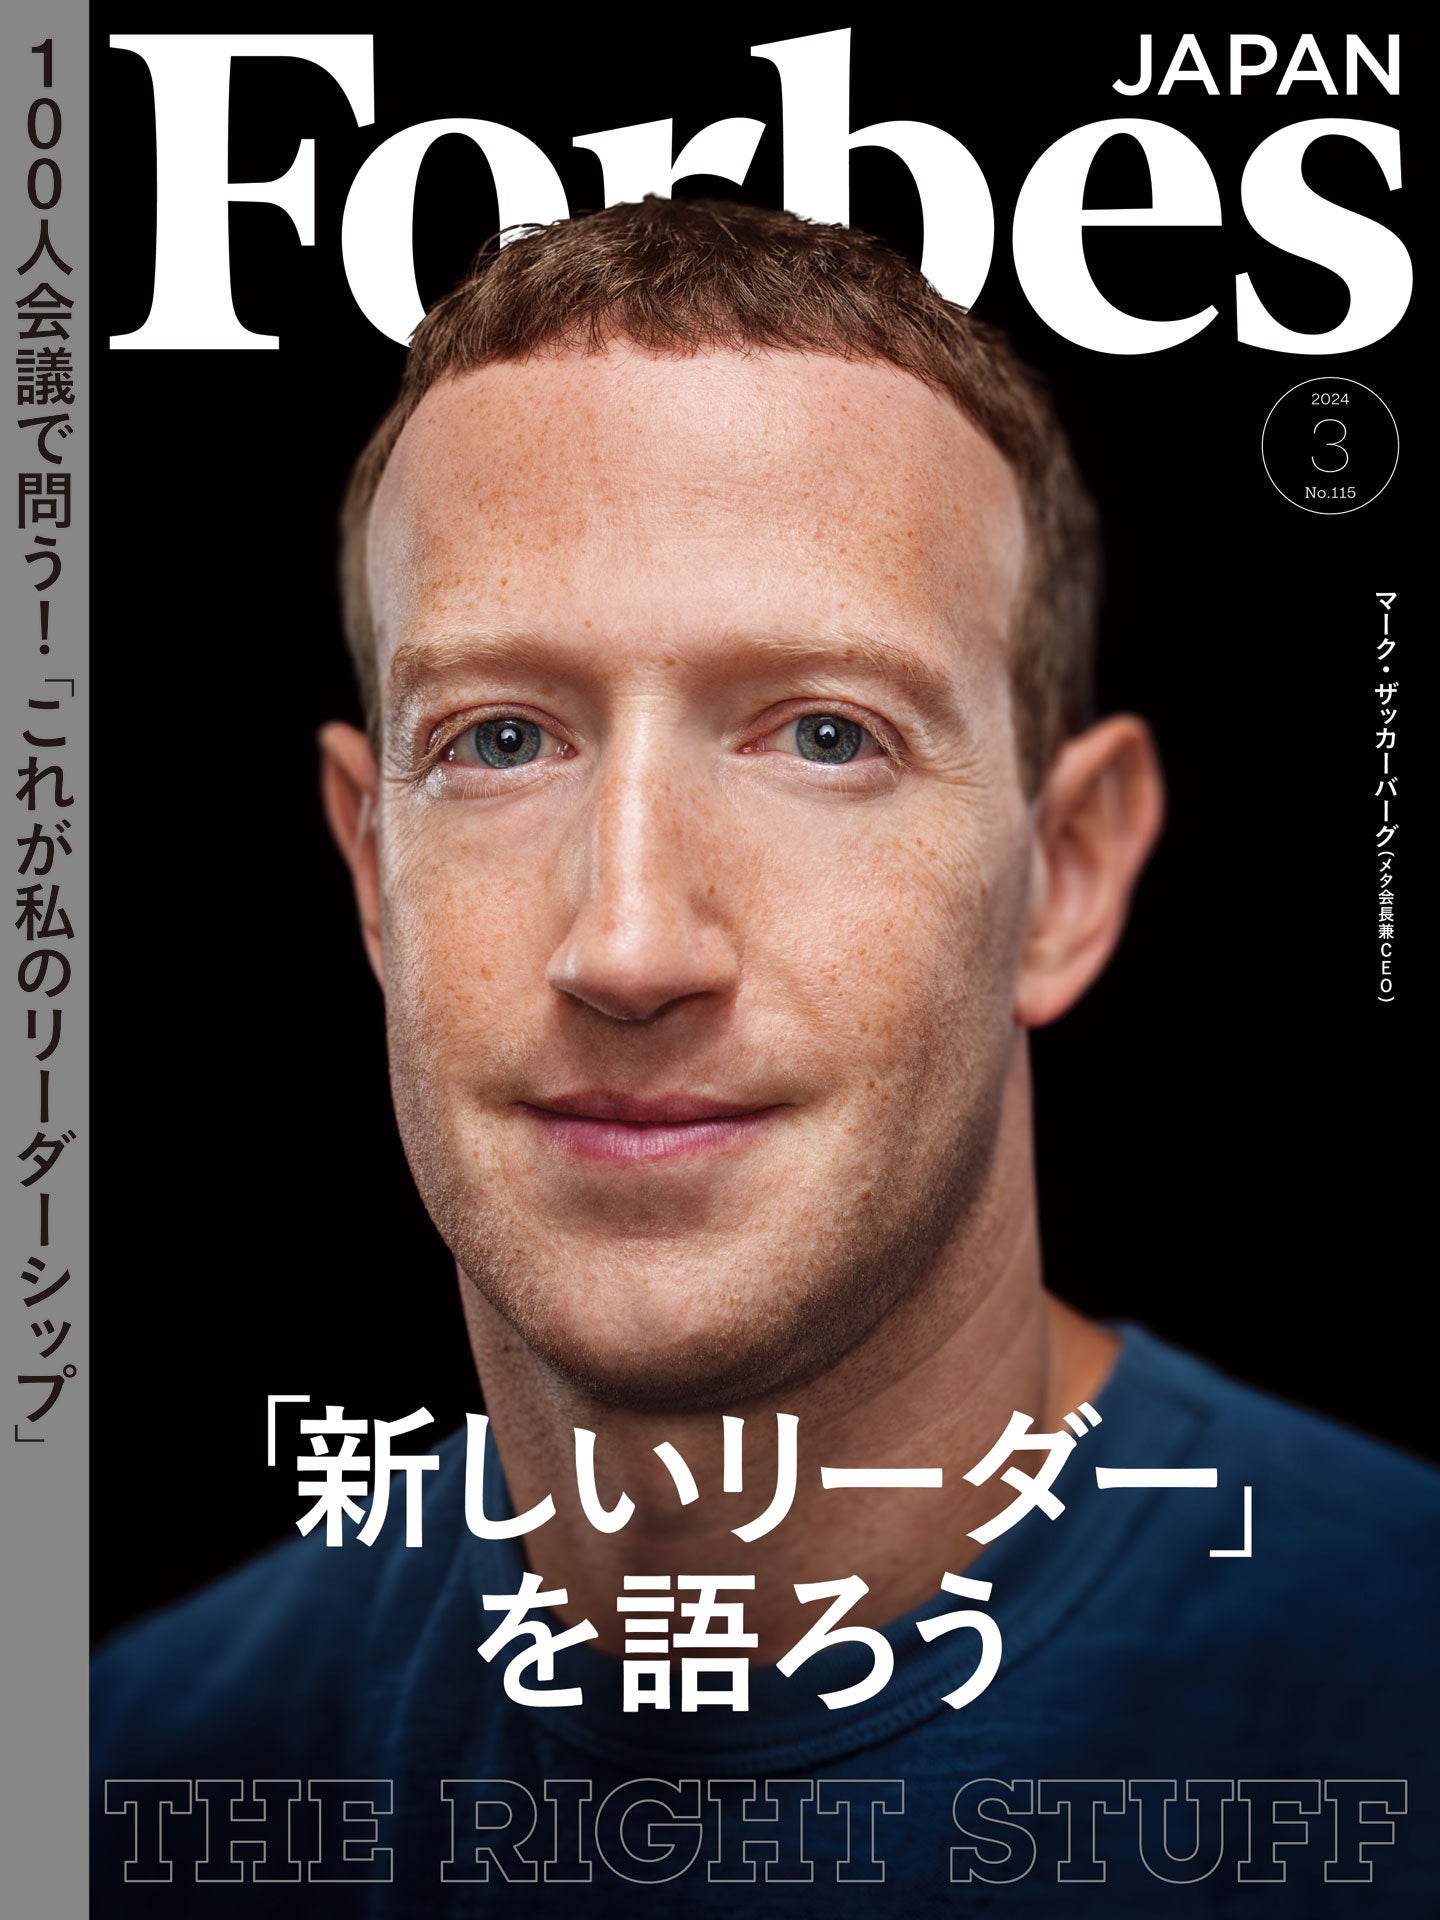 3֐AJf~bNAgvi[CxgJÁI@Forbes JAPAN ~ KSACuNEXT PIONEER -킷鎟̌҂- MATCHING DAY Vol.03v